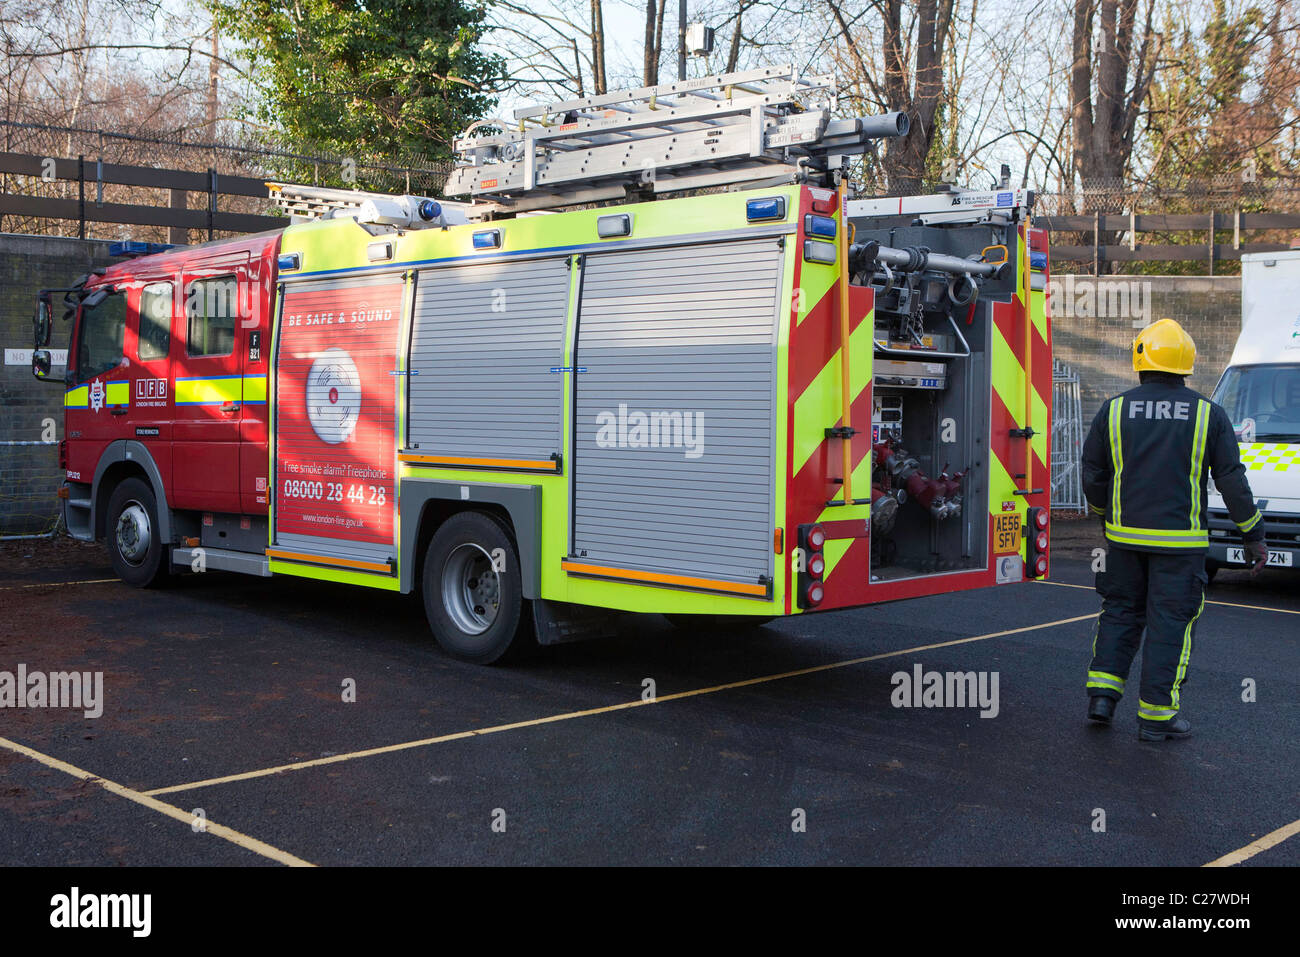 London Fire Brigade, gare la session de formation. Pompiers un incendie avec le moteur. Banque D'Images